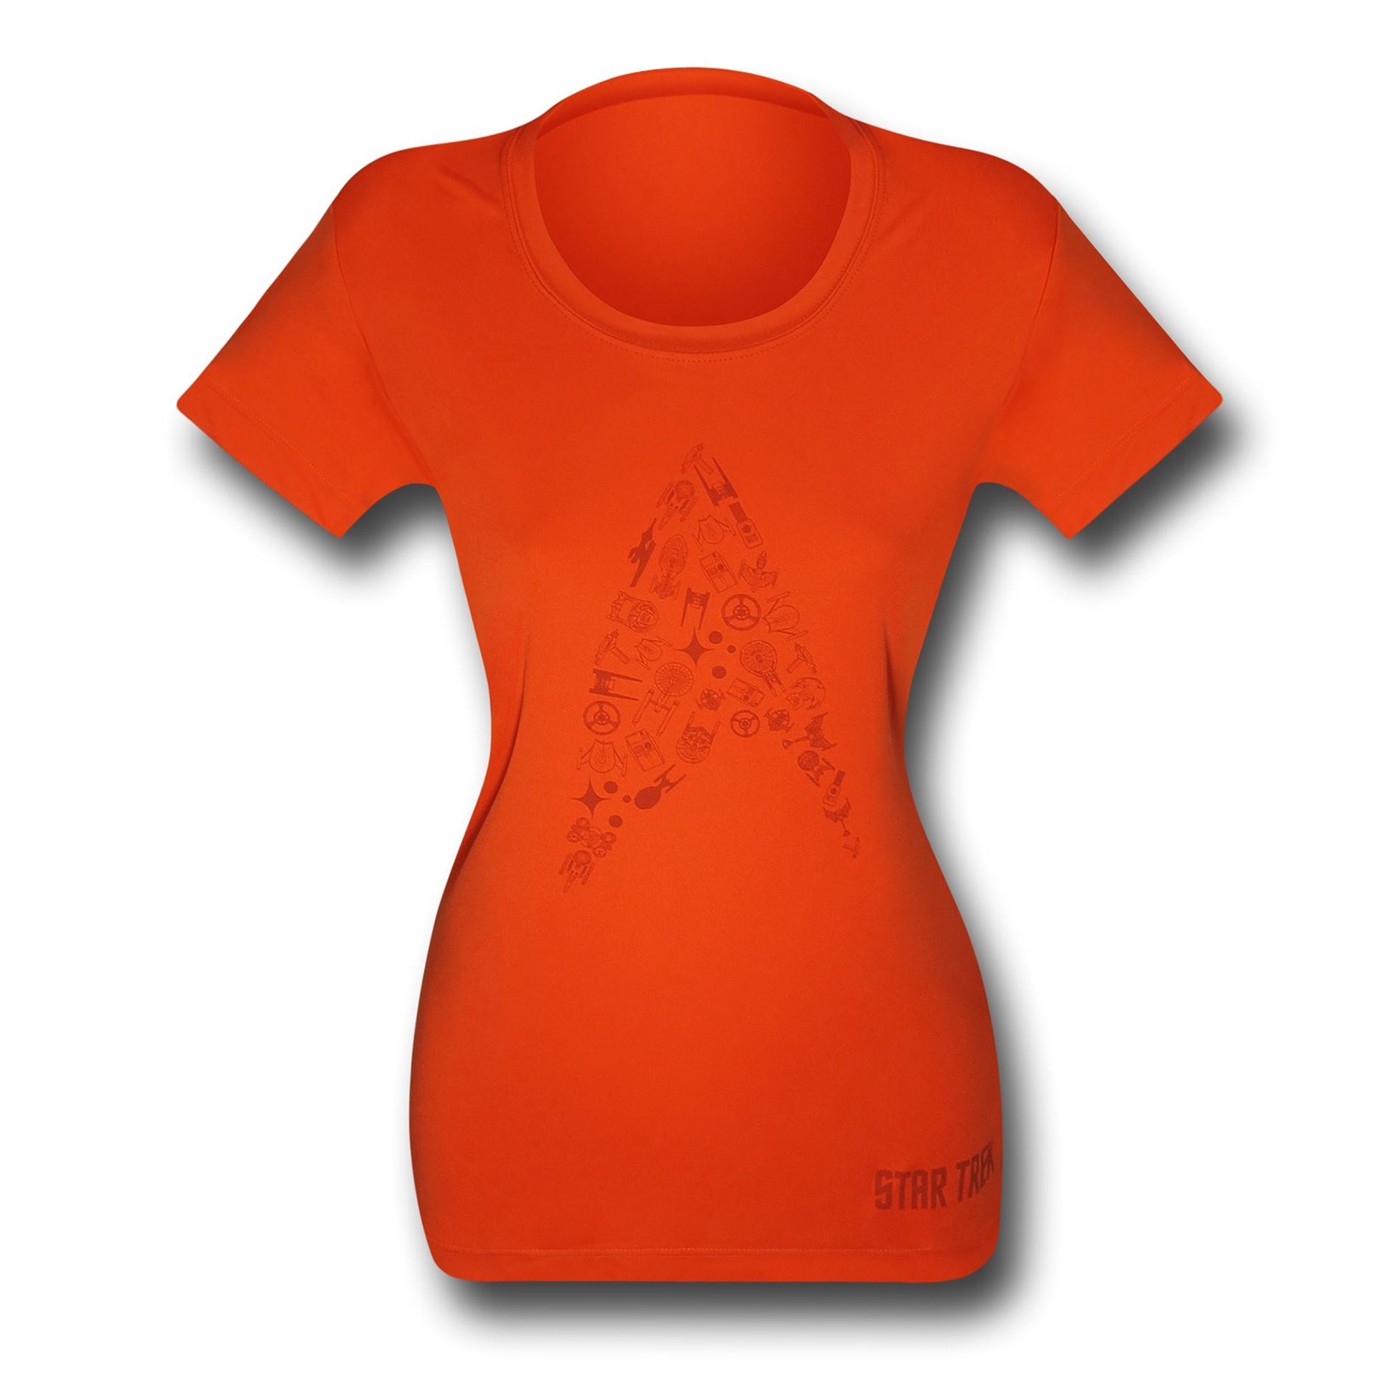 Star Trek Insignia Women's Orange Running Shirt